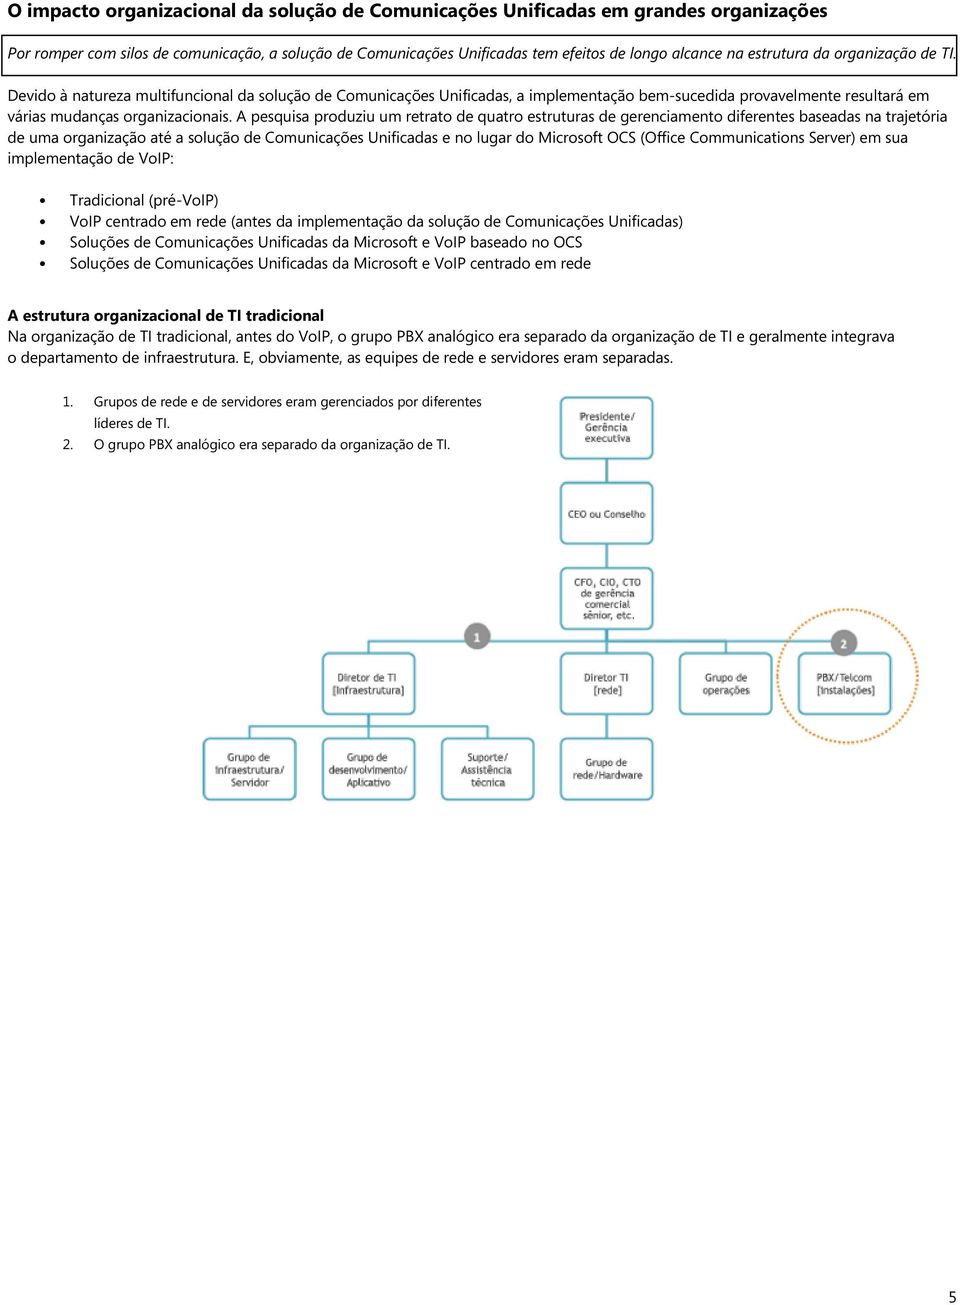 A pesquisa produziu um retrato de quatro estruturas de gerenciamento diferentes baseadas na trajetória de uma organização até a solução de Comunicações Unificadas e no lugar do Microsoft OCS (Office